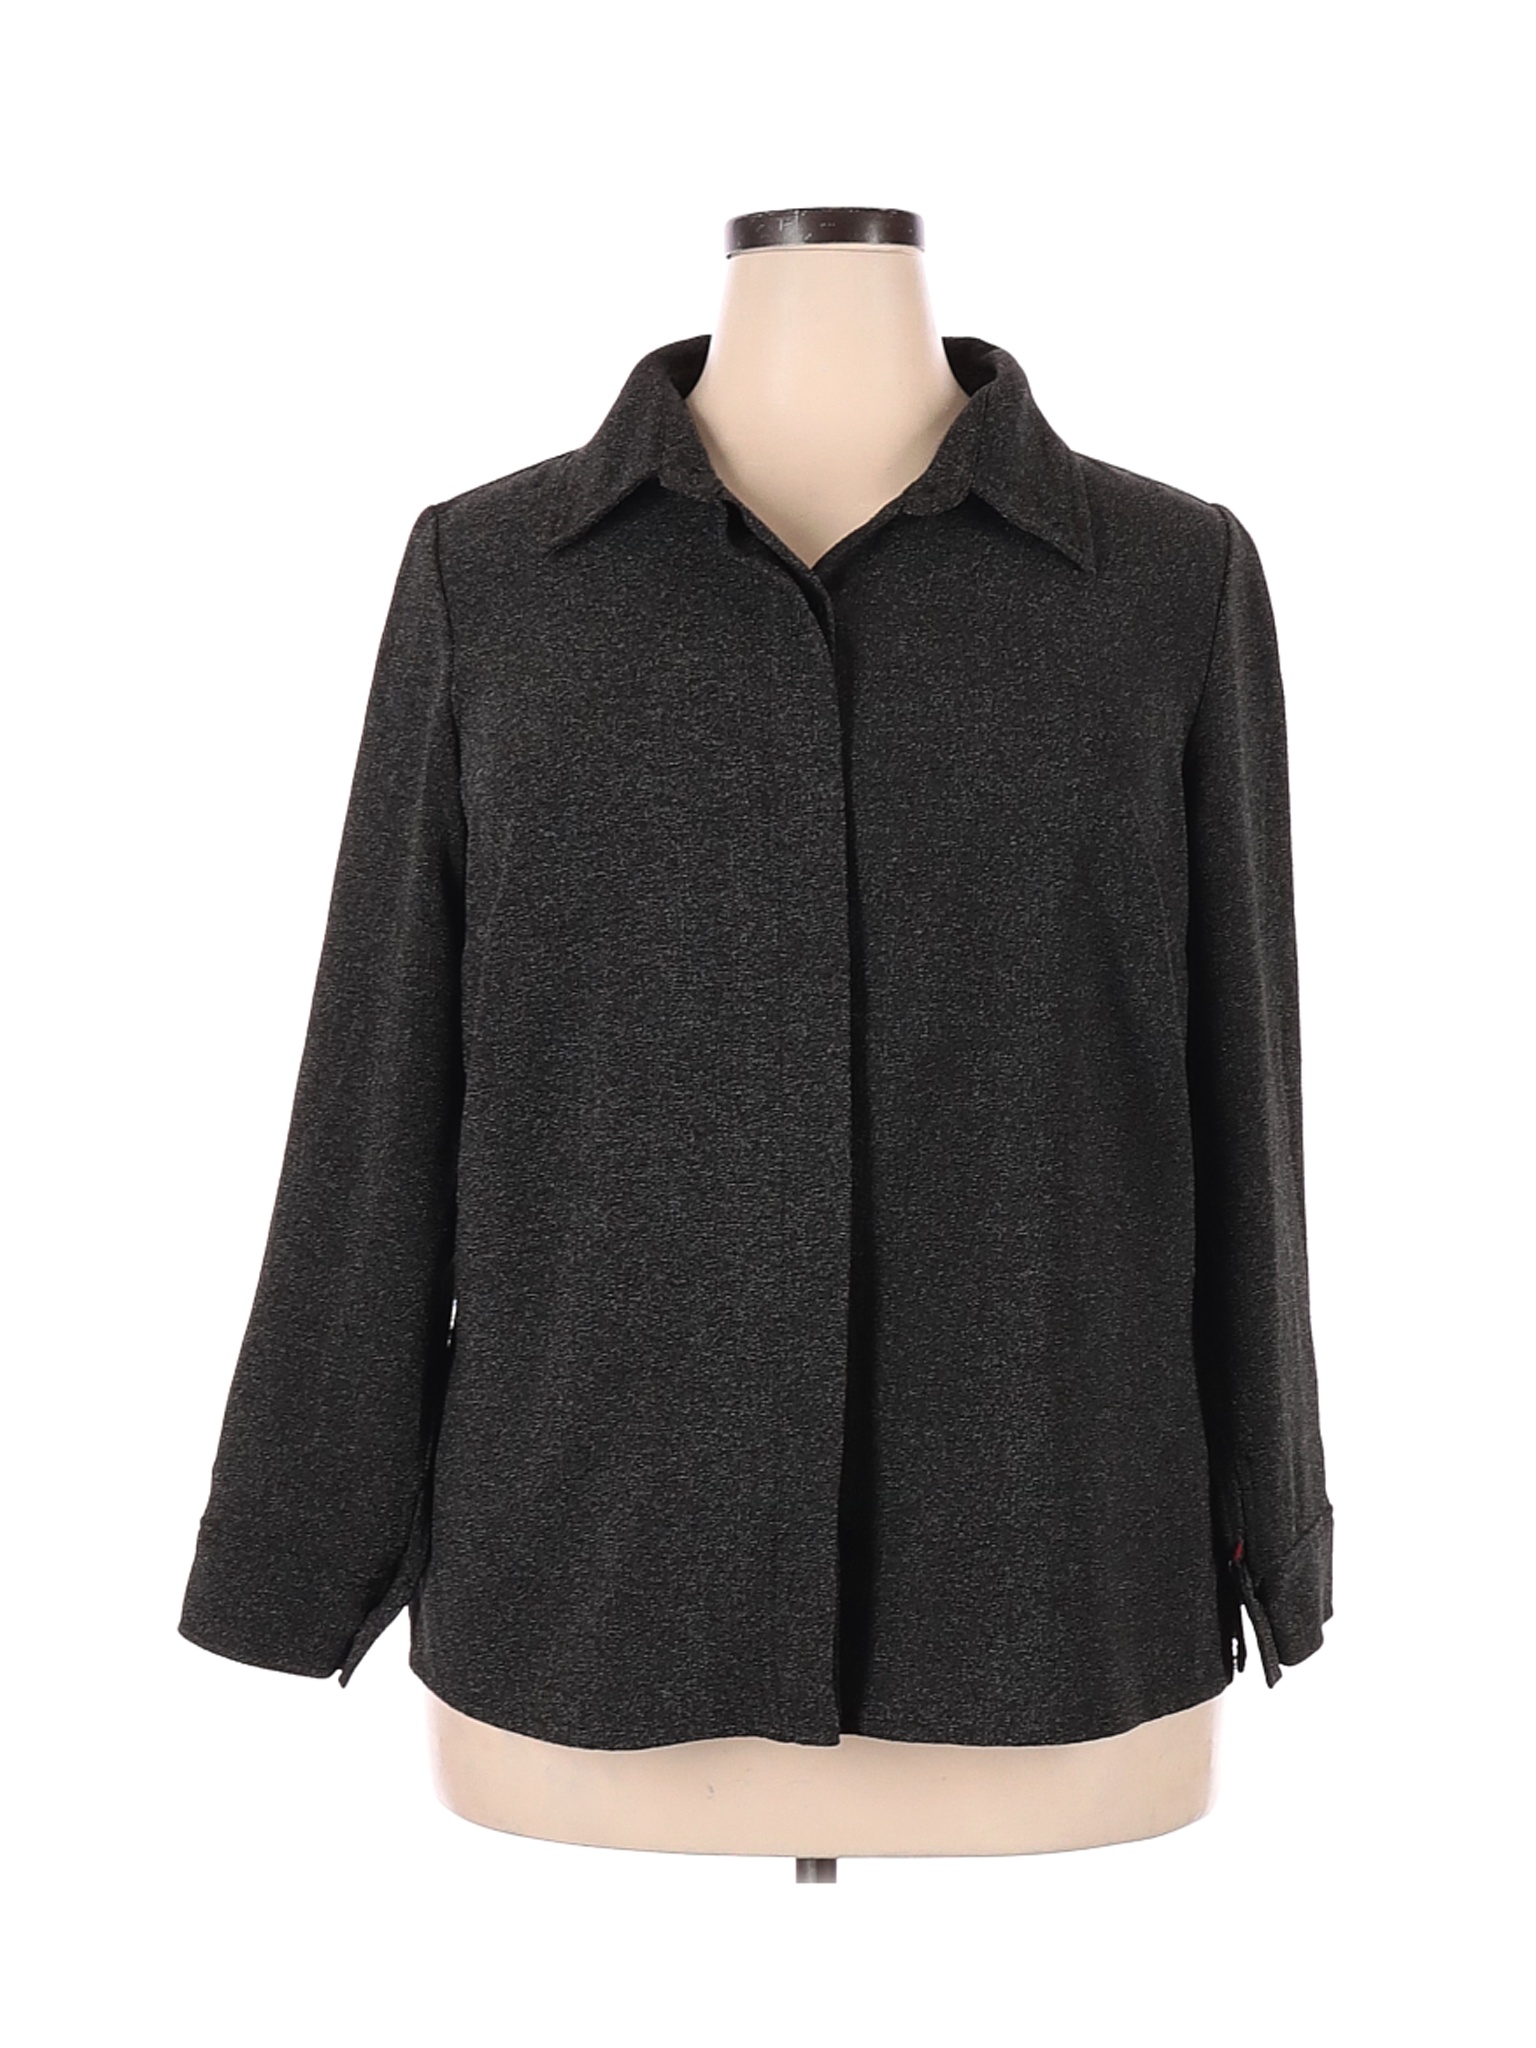 Soft by Avenue Women Black Long Sleeve Blouse 18 Plus | eBay